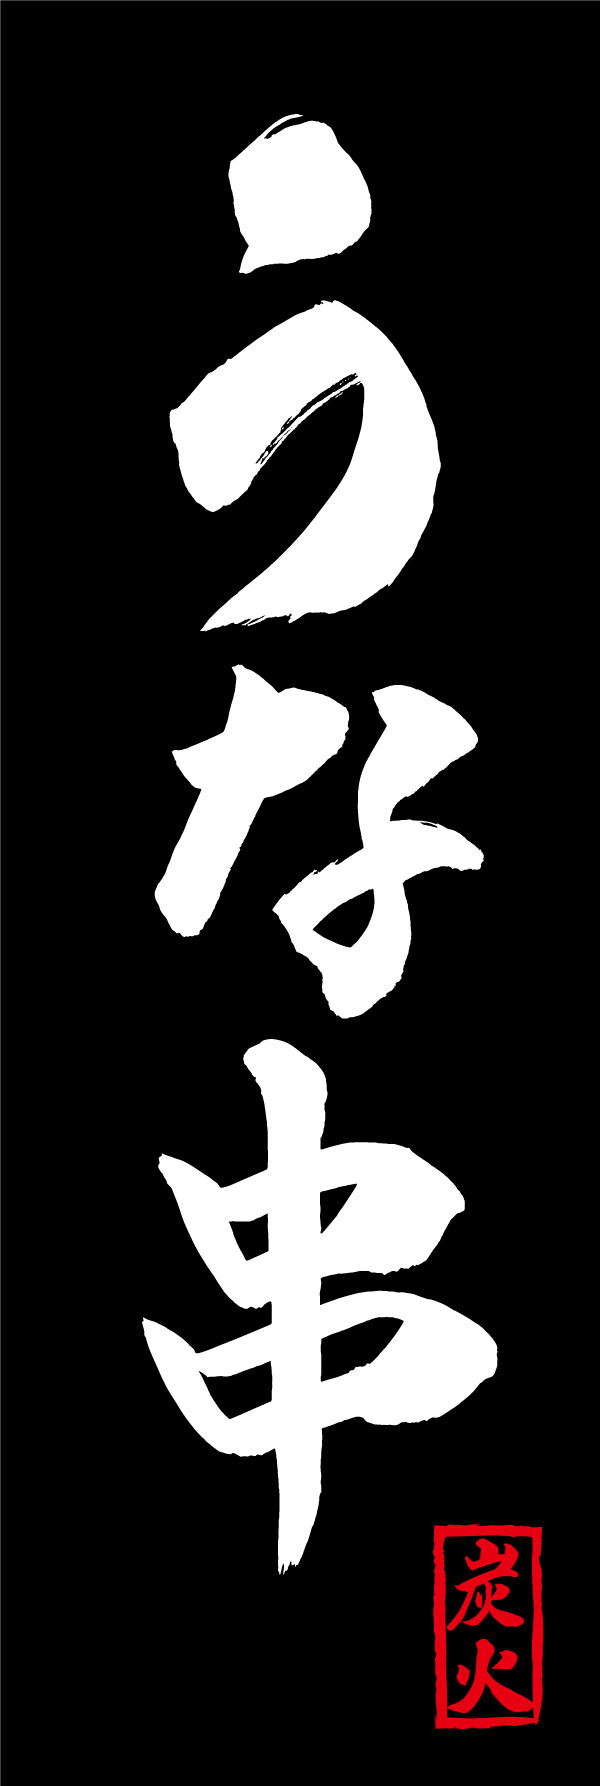 うな串 156_03 「うな串」の幟です。江戸文字職人 加藤木大介氏による、手書きの筆文字です。完全書き下ろし、唯一無二の幟は当店だけのオリジナル商品です。（Y.M）